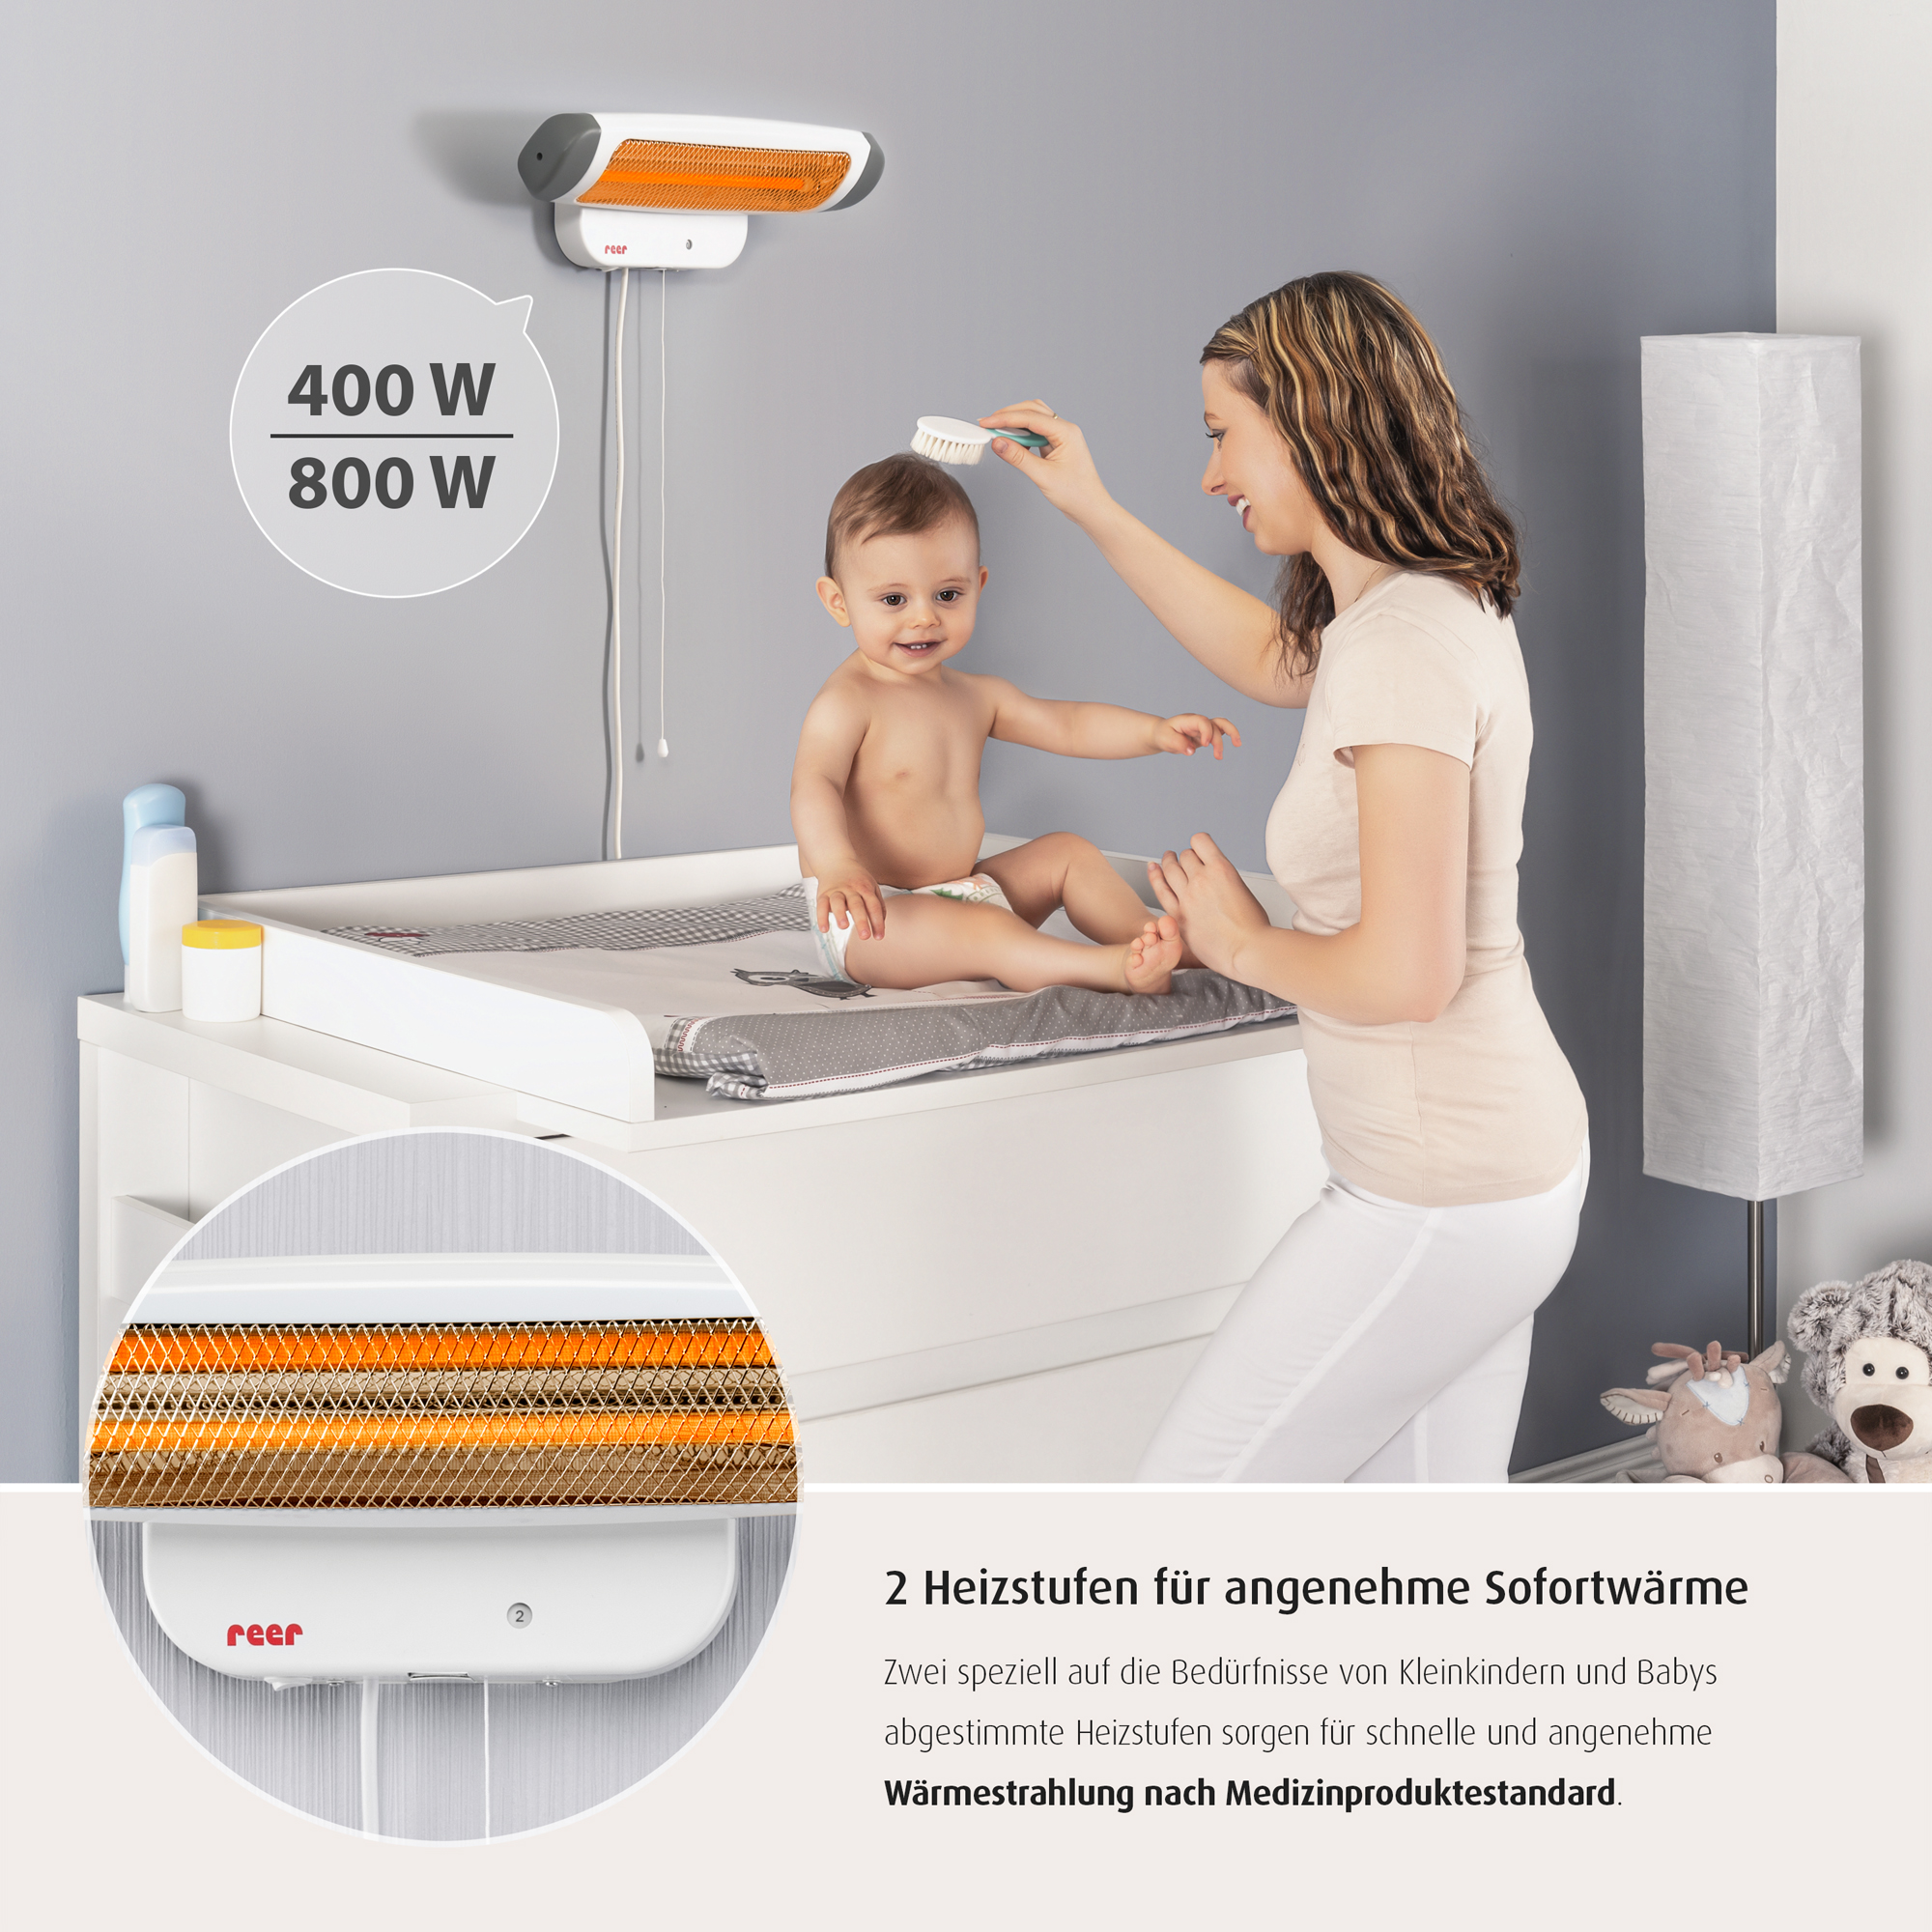 Wickeltisch-Wärmestrahler 'FeelWell' 800 W + product picture